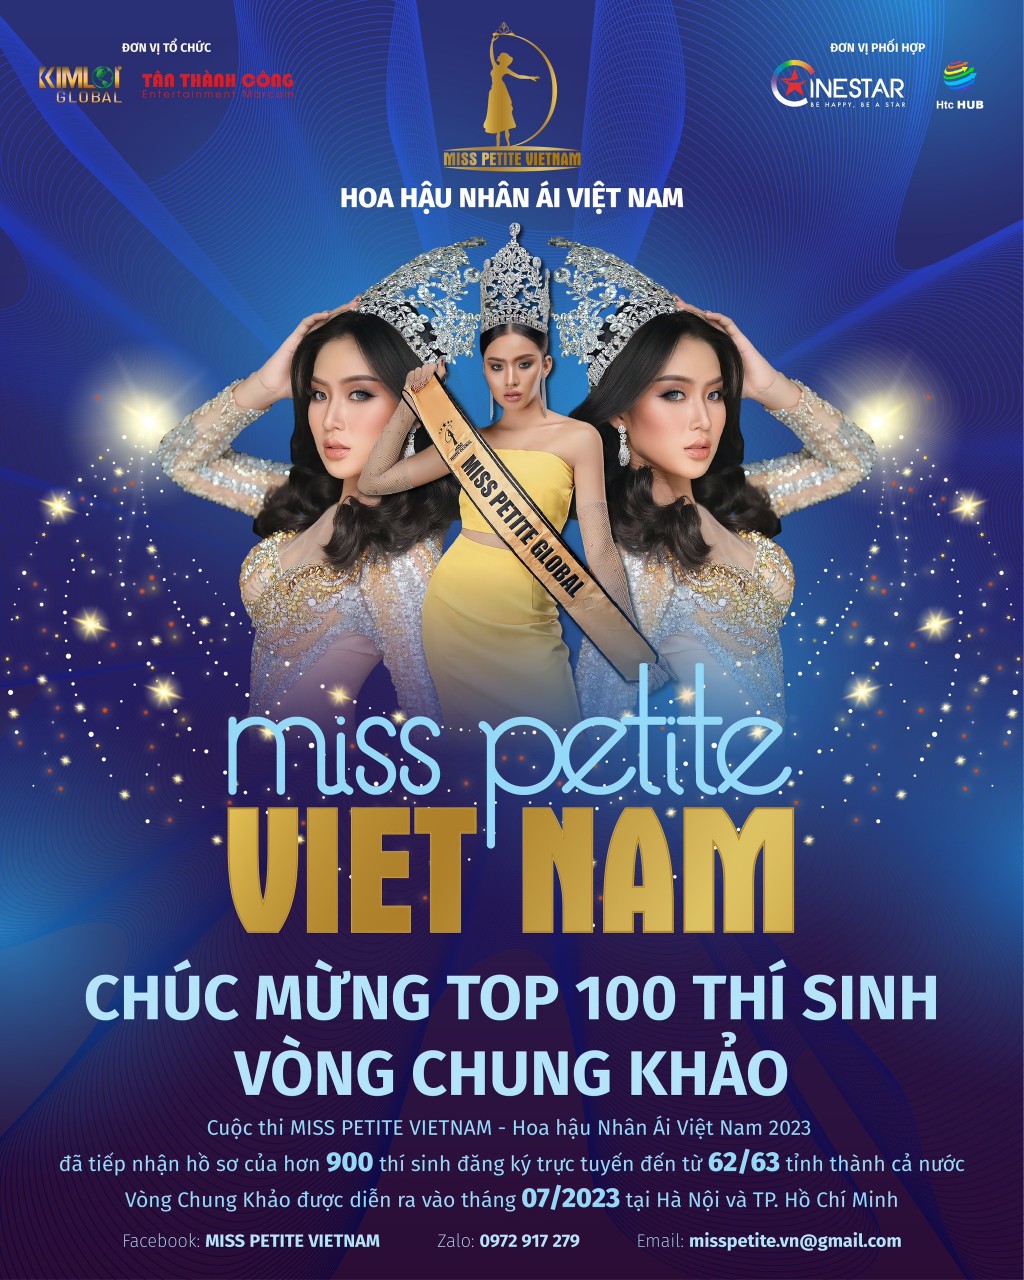 BTC đã công bố Top 100 thí sinh vào chung khảo cuộc thi Hoa nhậu Nhân ái Việt Nam 2023